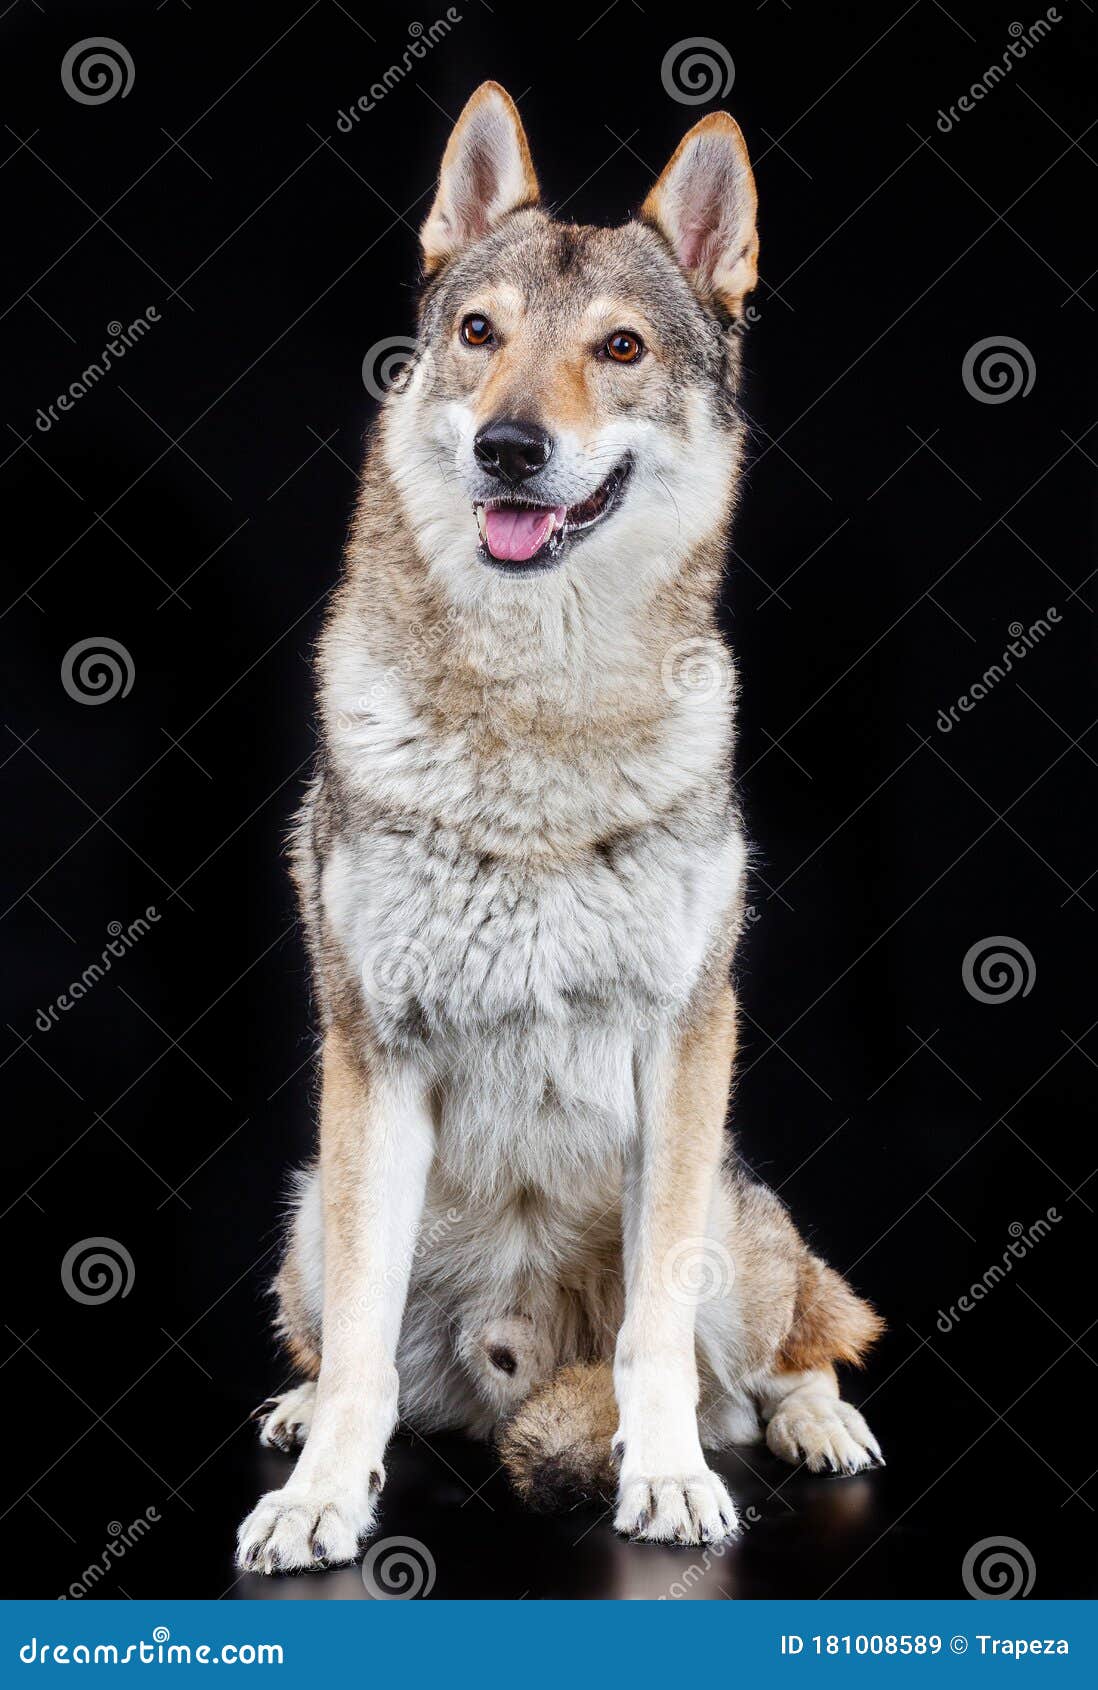 Czechoslovakian Wolfdog Dog Studio Photography On A Black Background Stock Image Image Of Beautiful Face 181008589